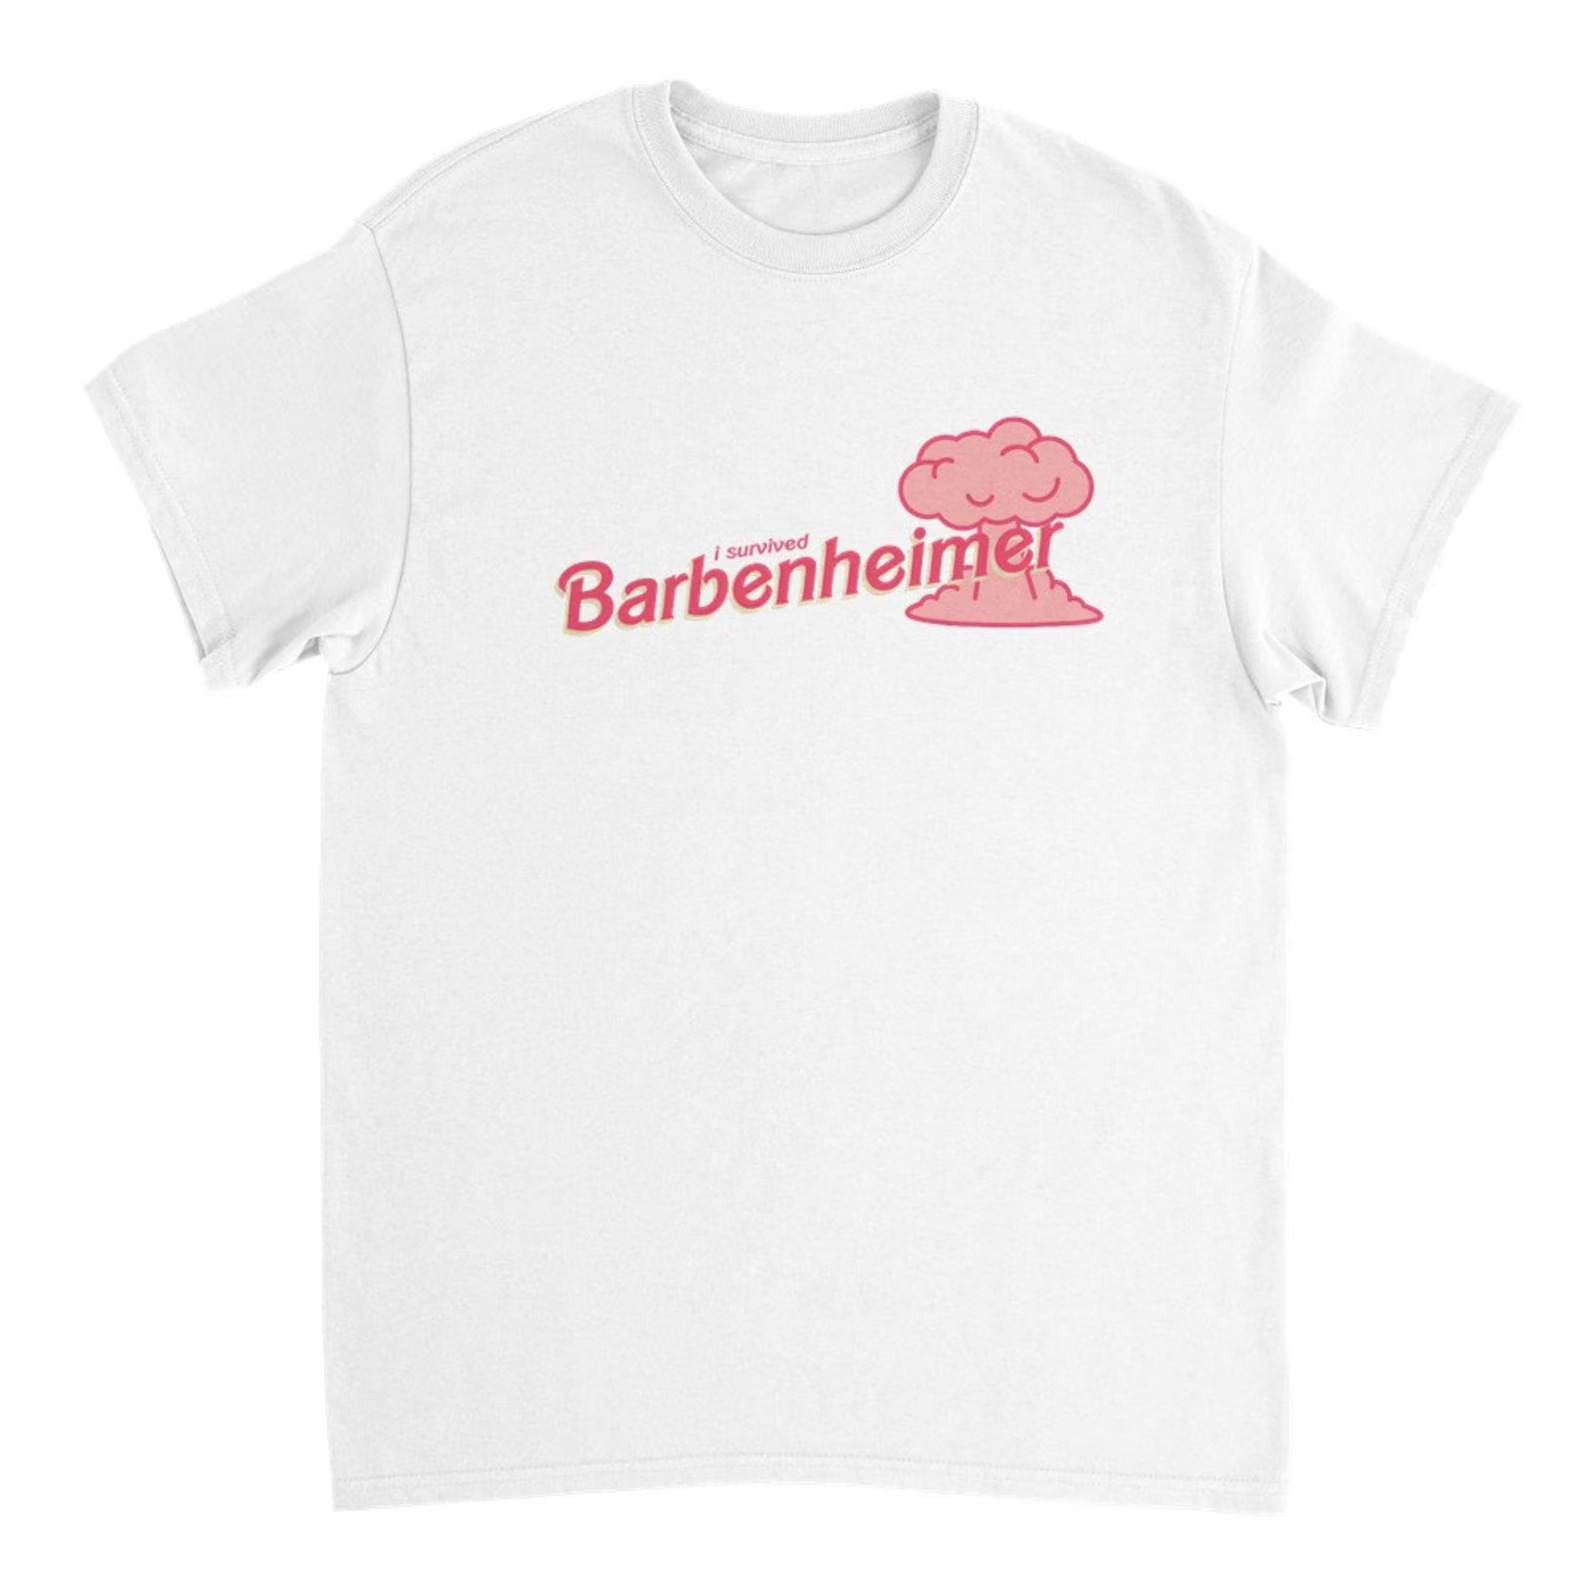 una maglietta sul barbenheimer